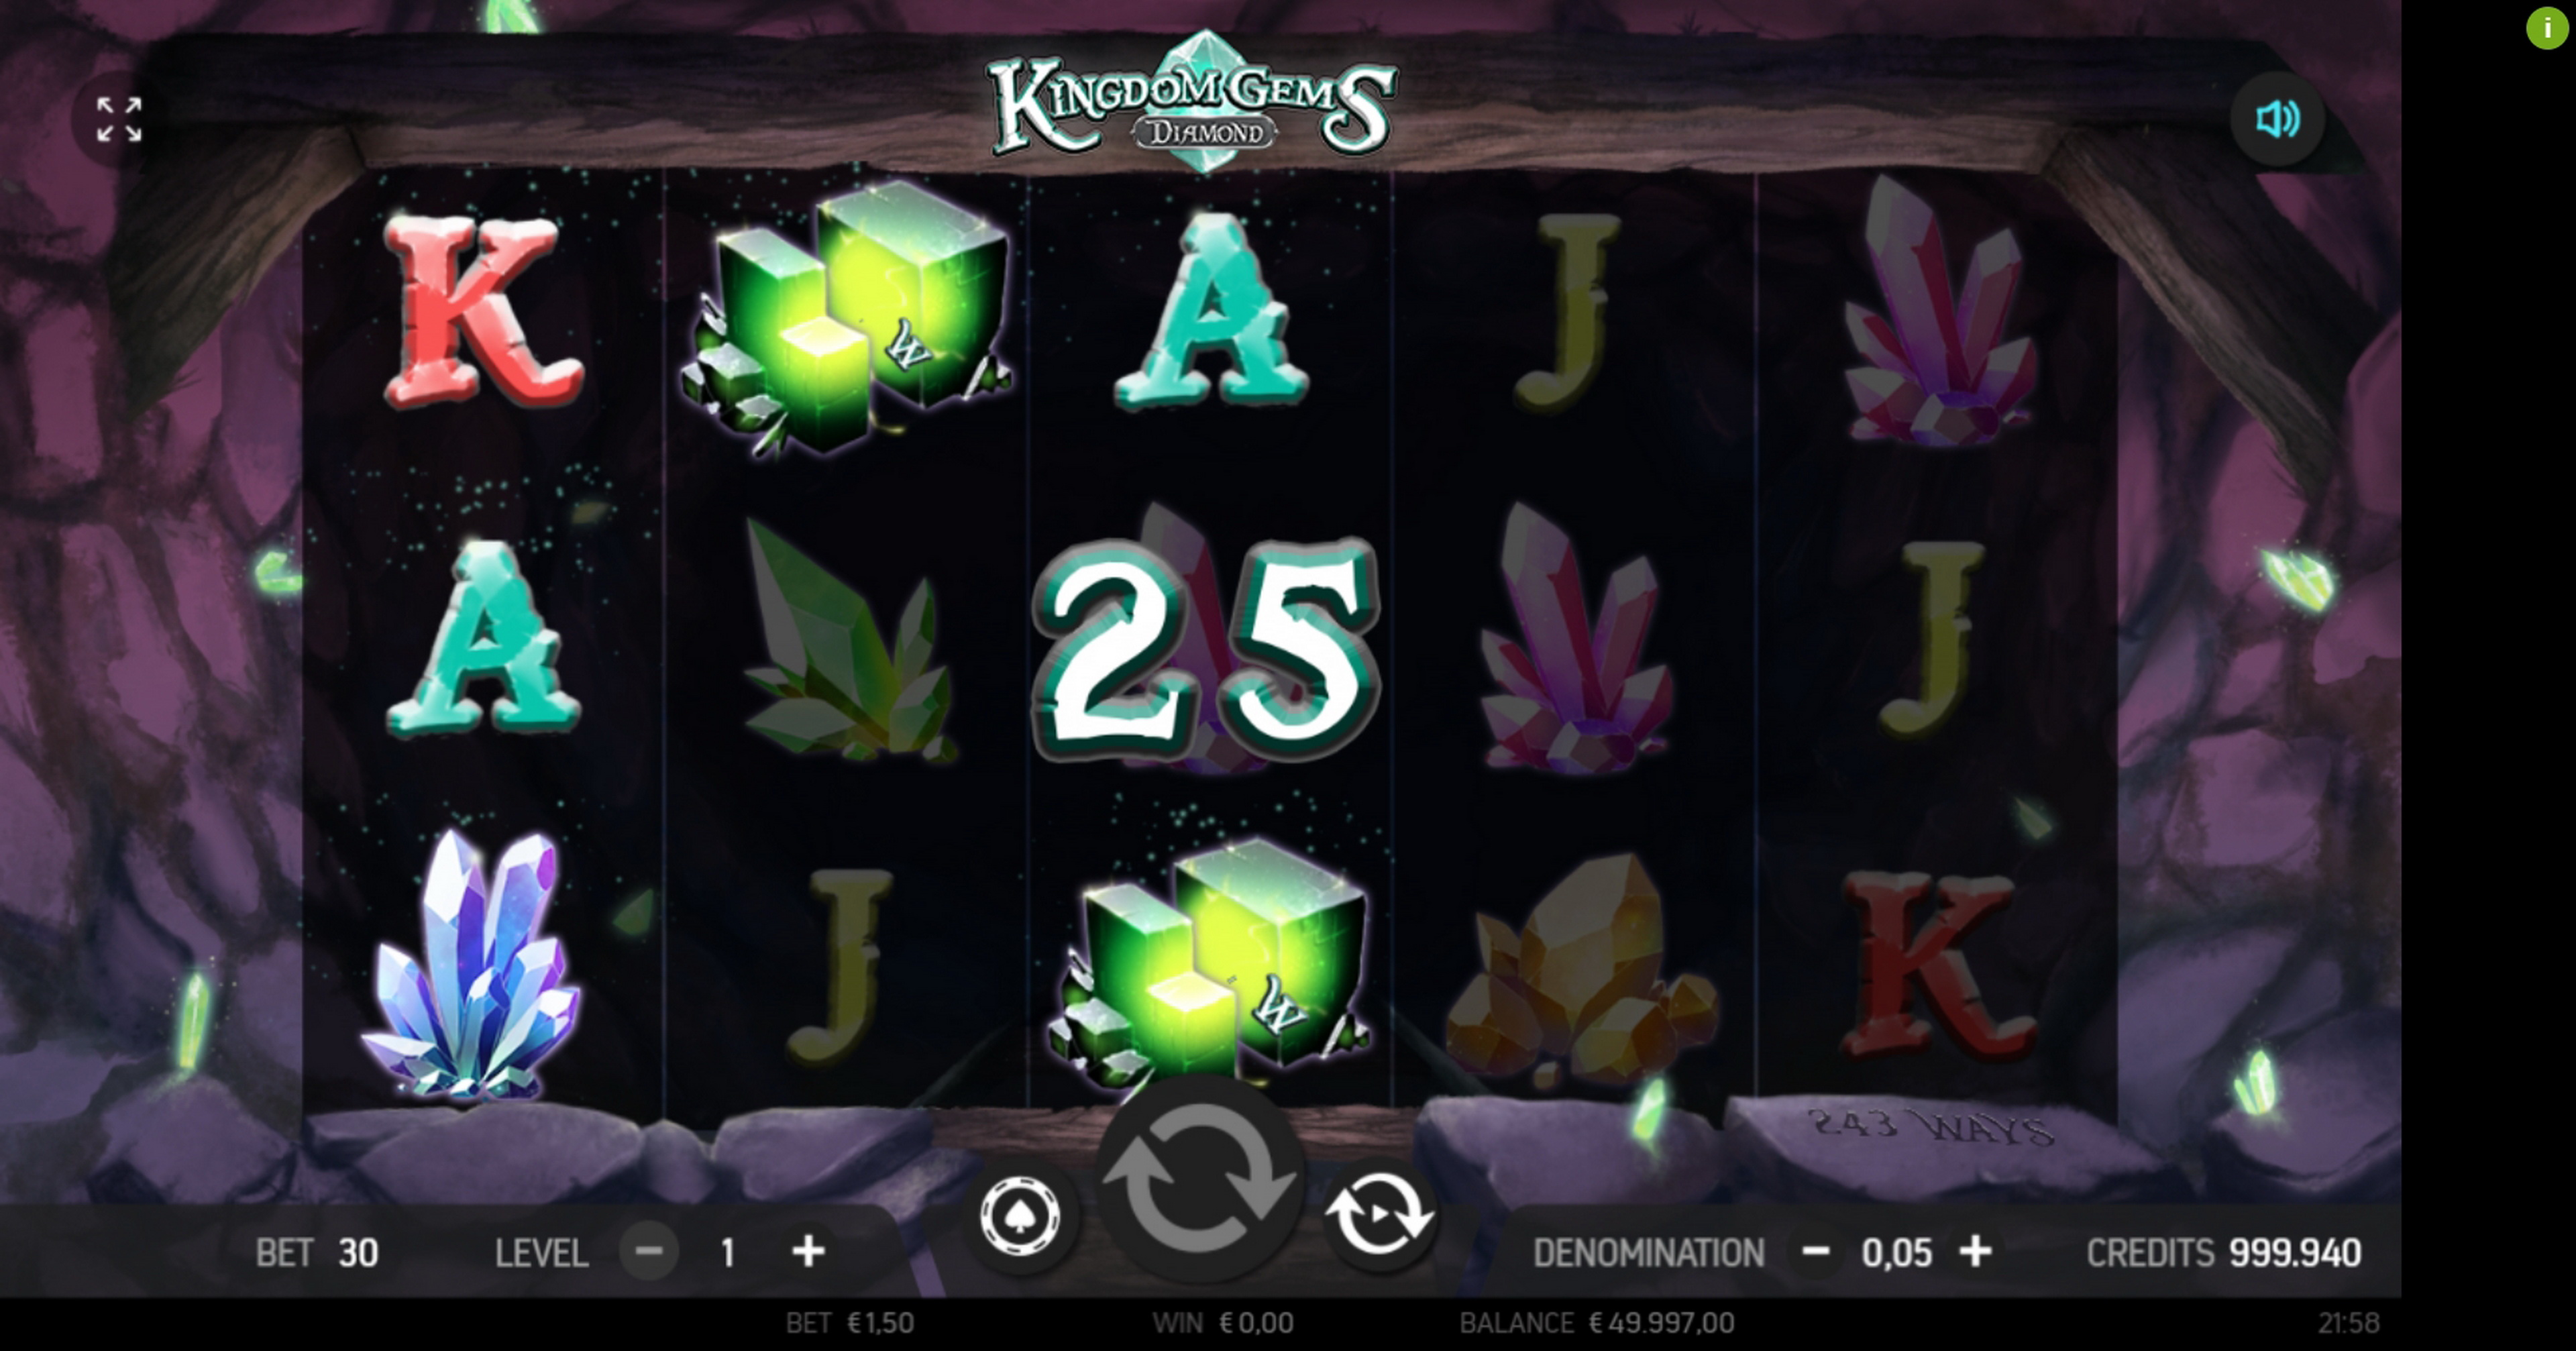 Win Money in Kingdom Gems Diamond Free Slot Game by FBM